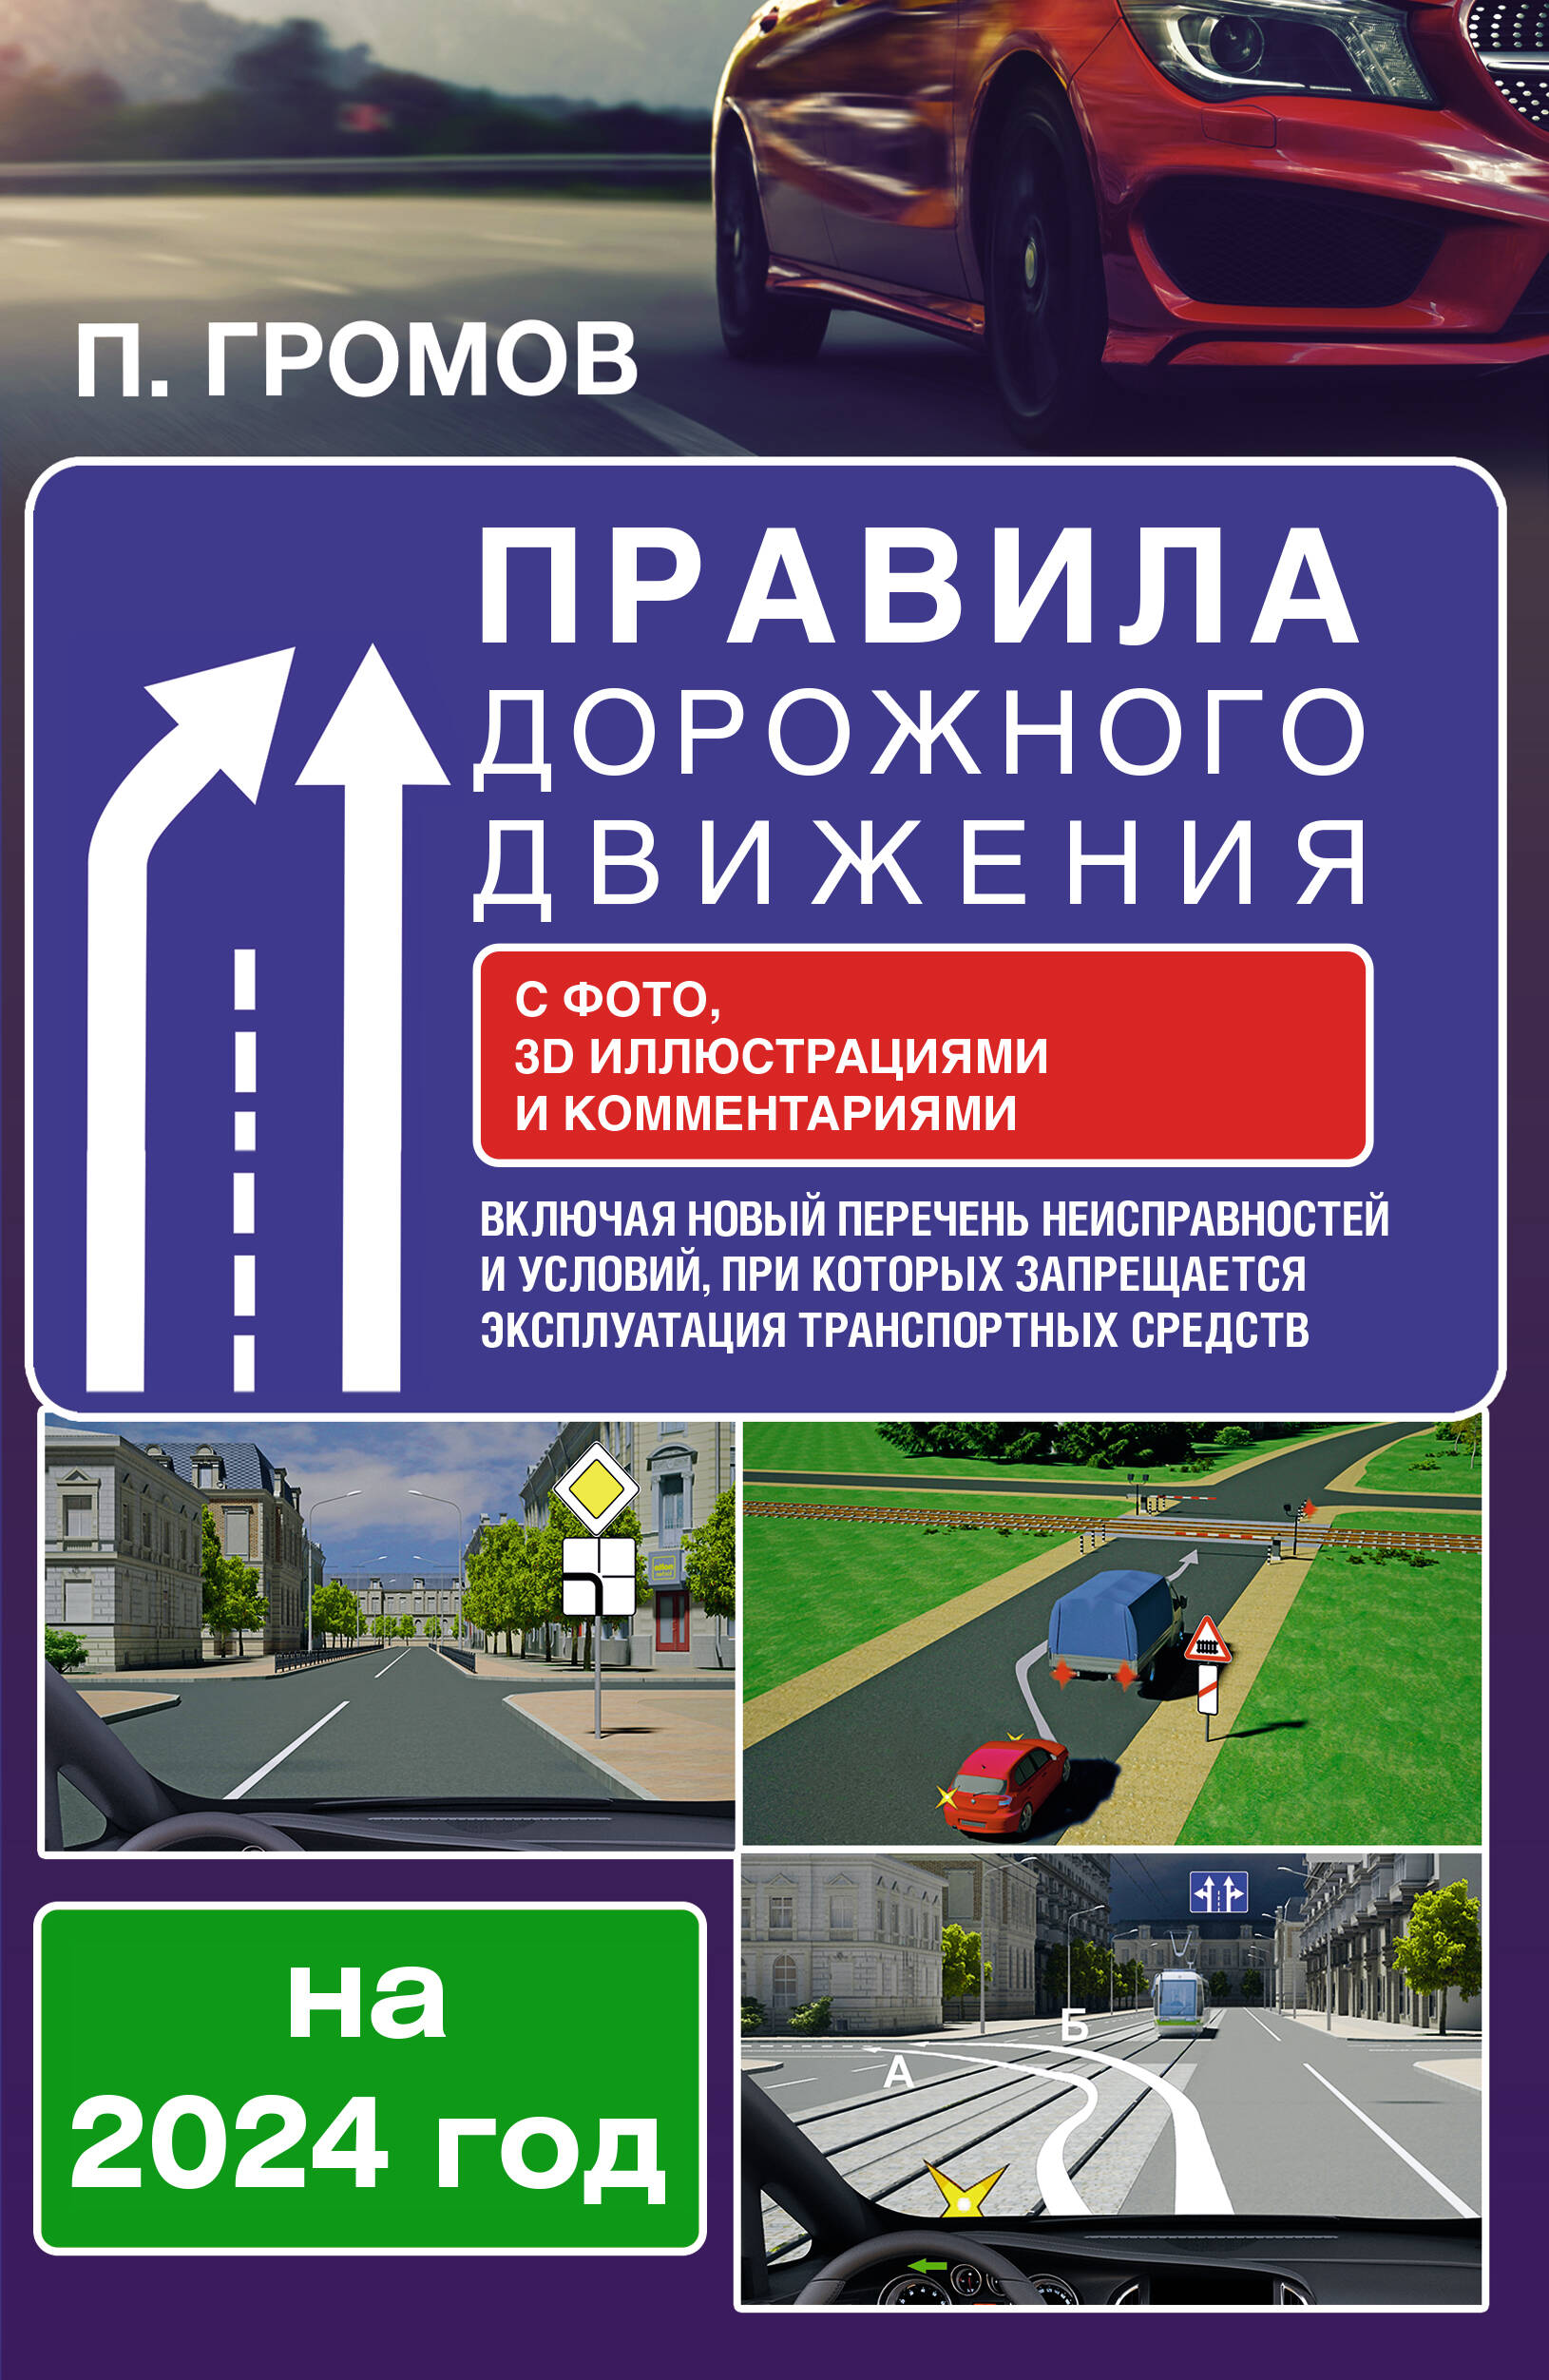 Громов Павел Михайлович Правила дорожного движения с фото, 3D иллюстрациями и комментариями на 2024 год. Включая новый перечень неисправностей и условий, при которых запрещается эксплуатация транспортных средств